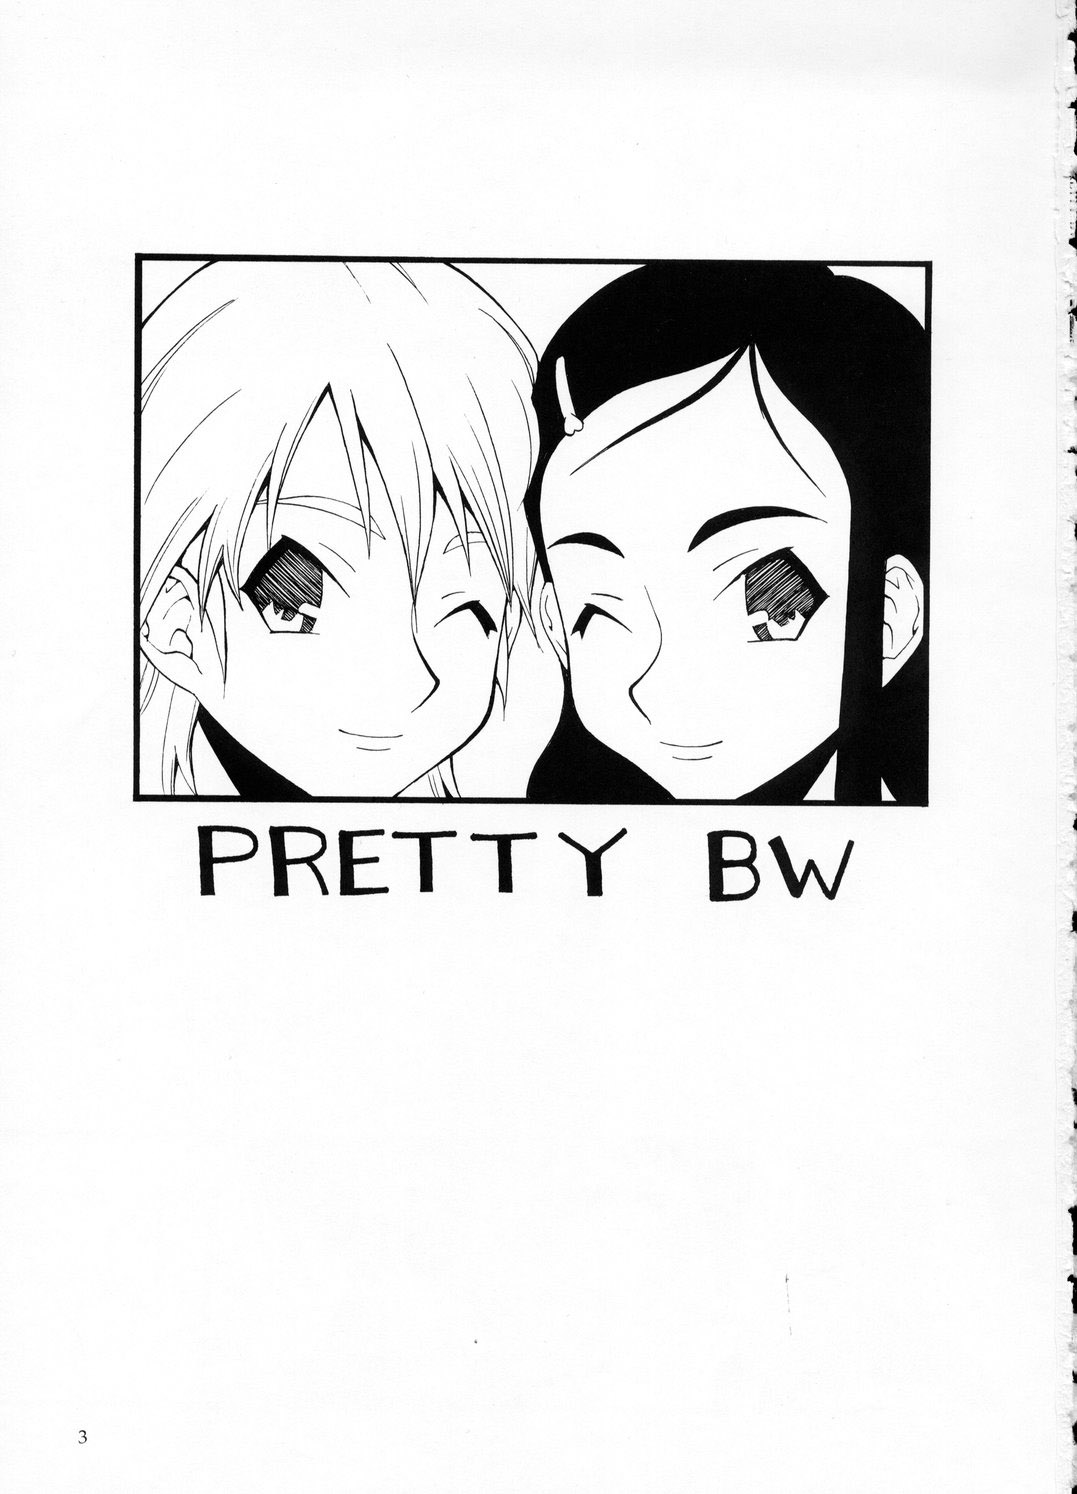 [Mangana] Pretty BW (Futari wa Precure) 